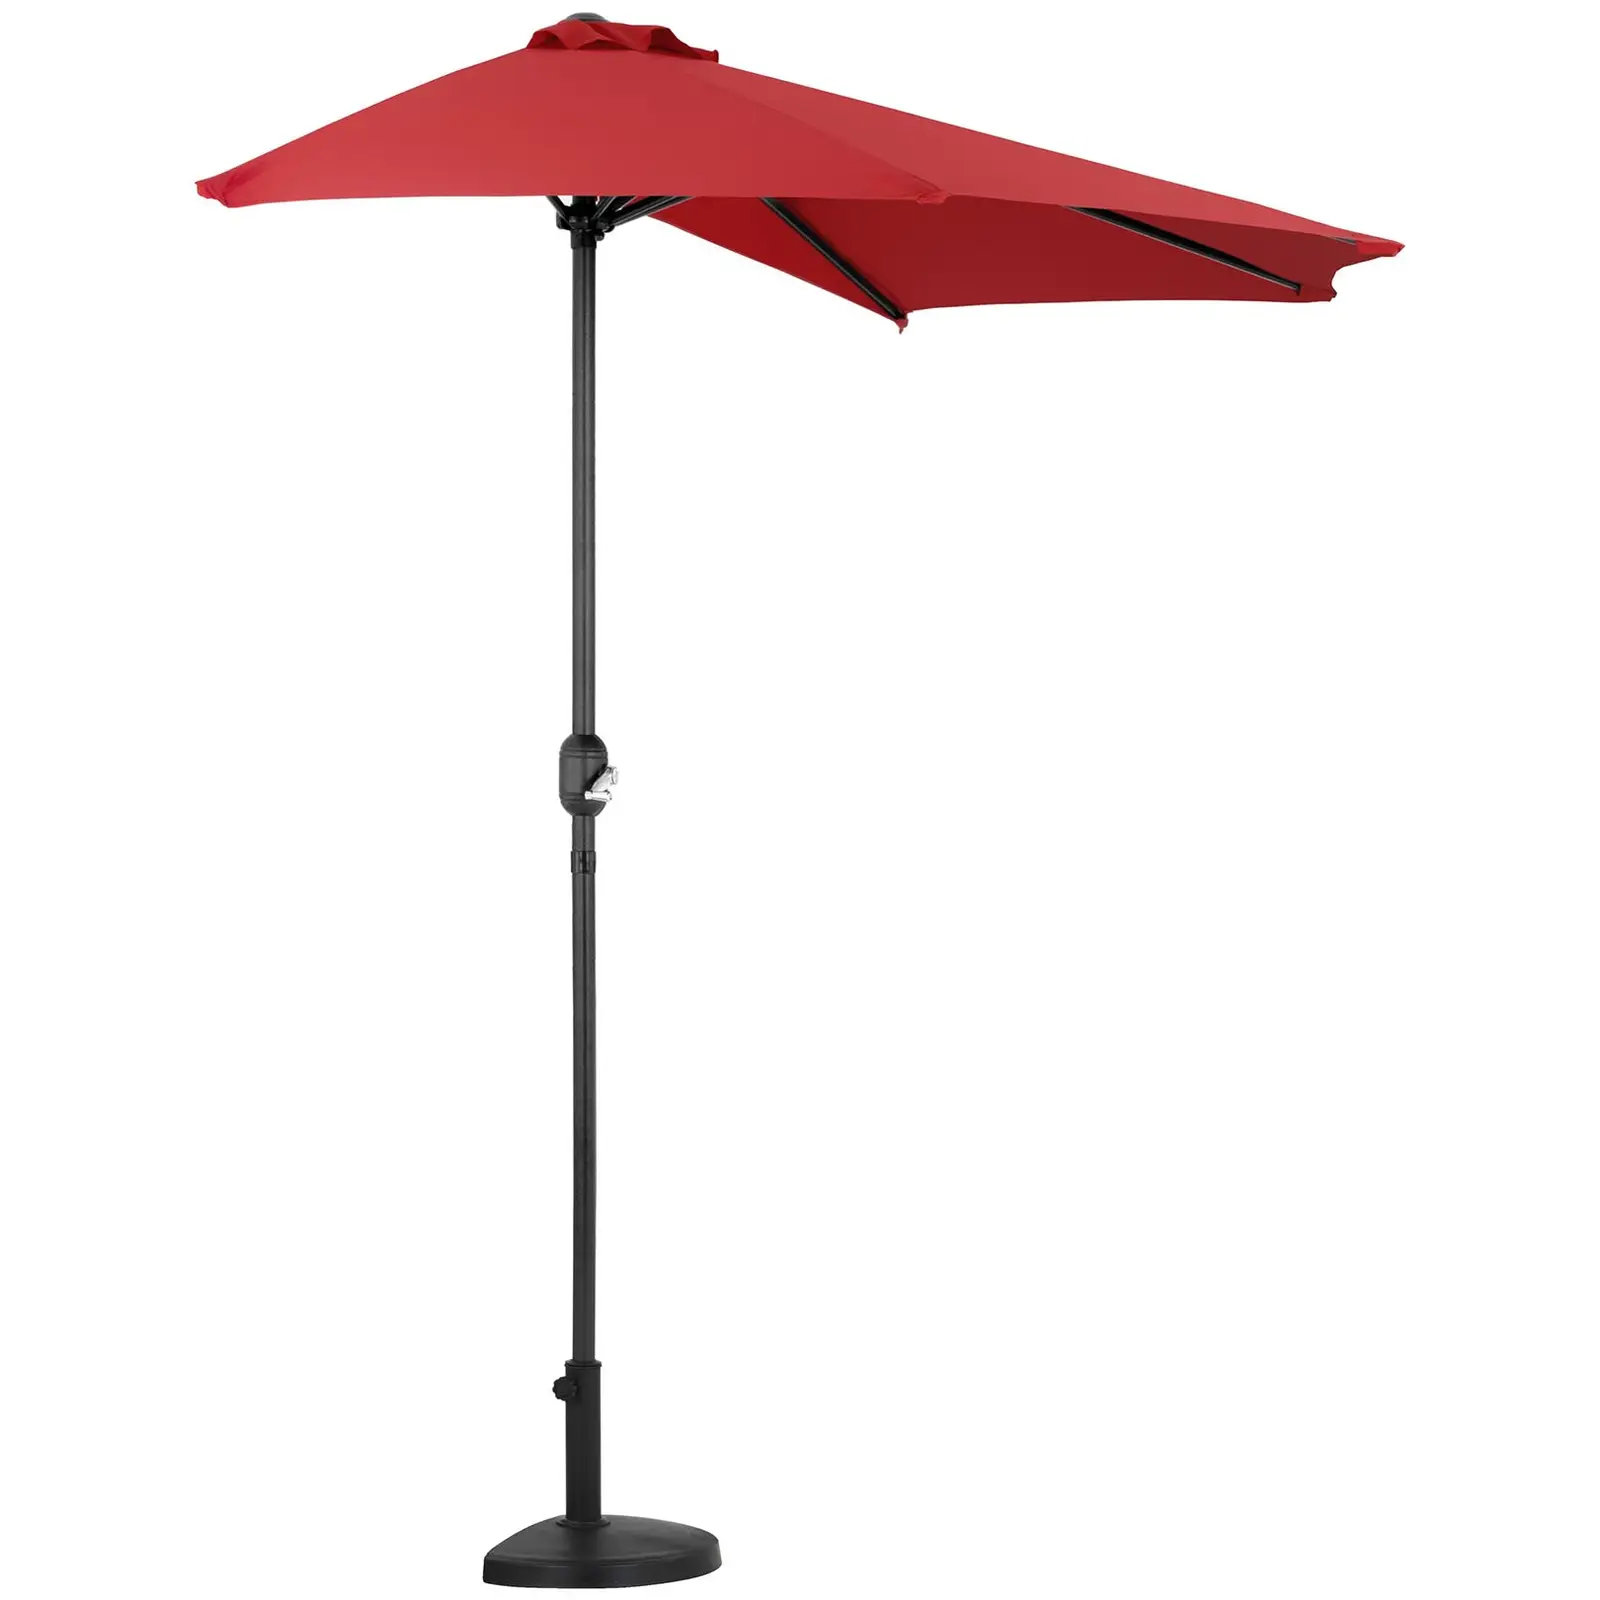 Halv parasolfod - parasolstangen skal måle 38 til 48 mm i diameter